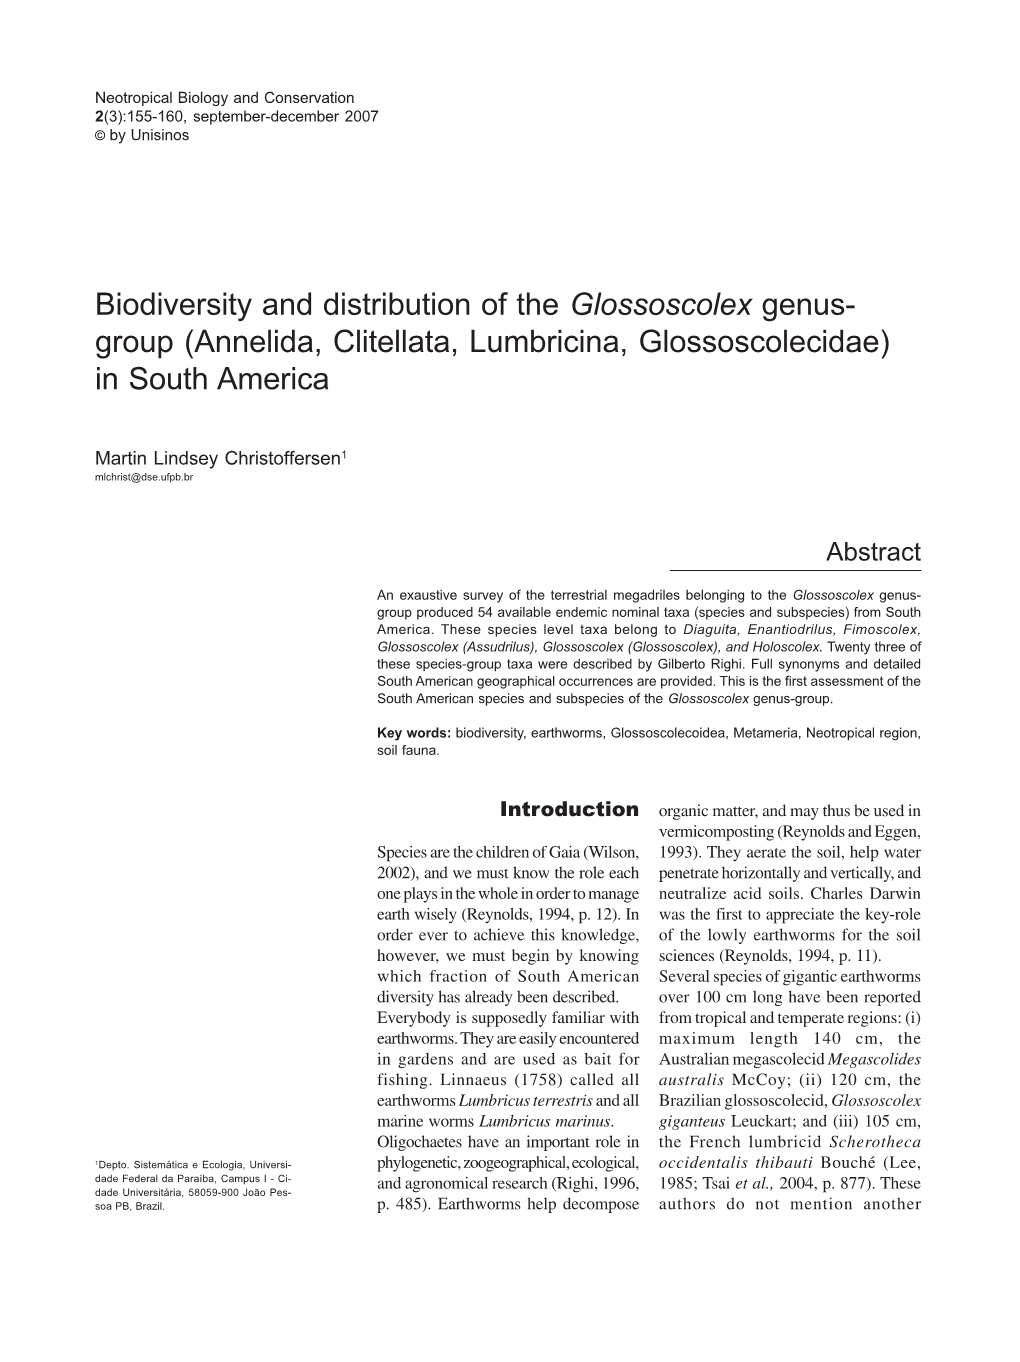 Annelida, Clitellata, Lumbricina, Glossoscolecidae) in South America